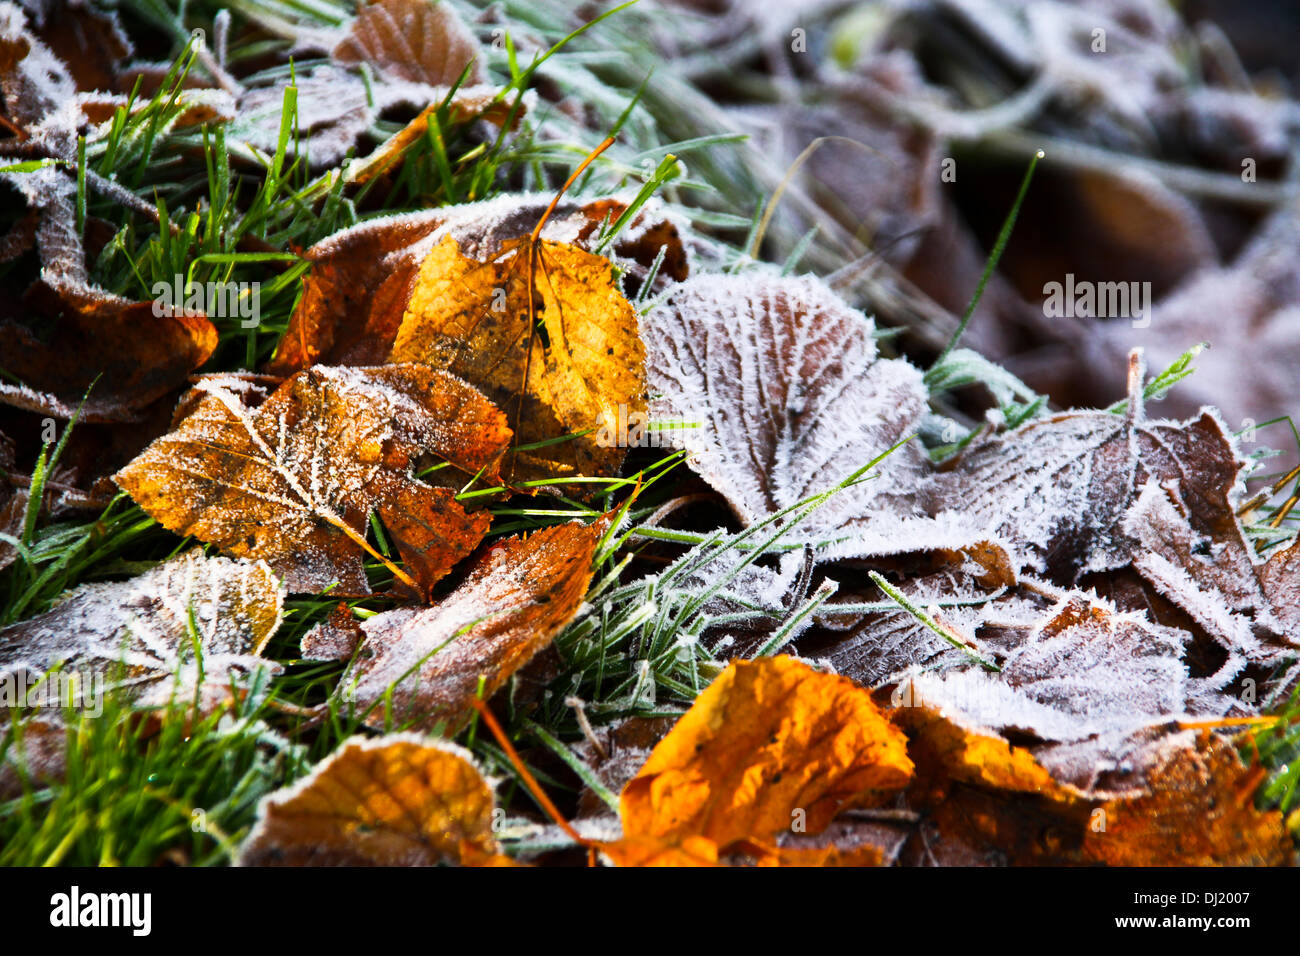 Schottlands, Glasgow, Vereinigtes Königreich. 19. November 2013. Starkem Frost Stäube Gras- und Herbstlaub.  Colzium Park Schottlands. Bildnachweis: ALAN OLIVER/Alamy Live-Nachrichten Stockfoto